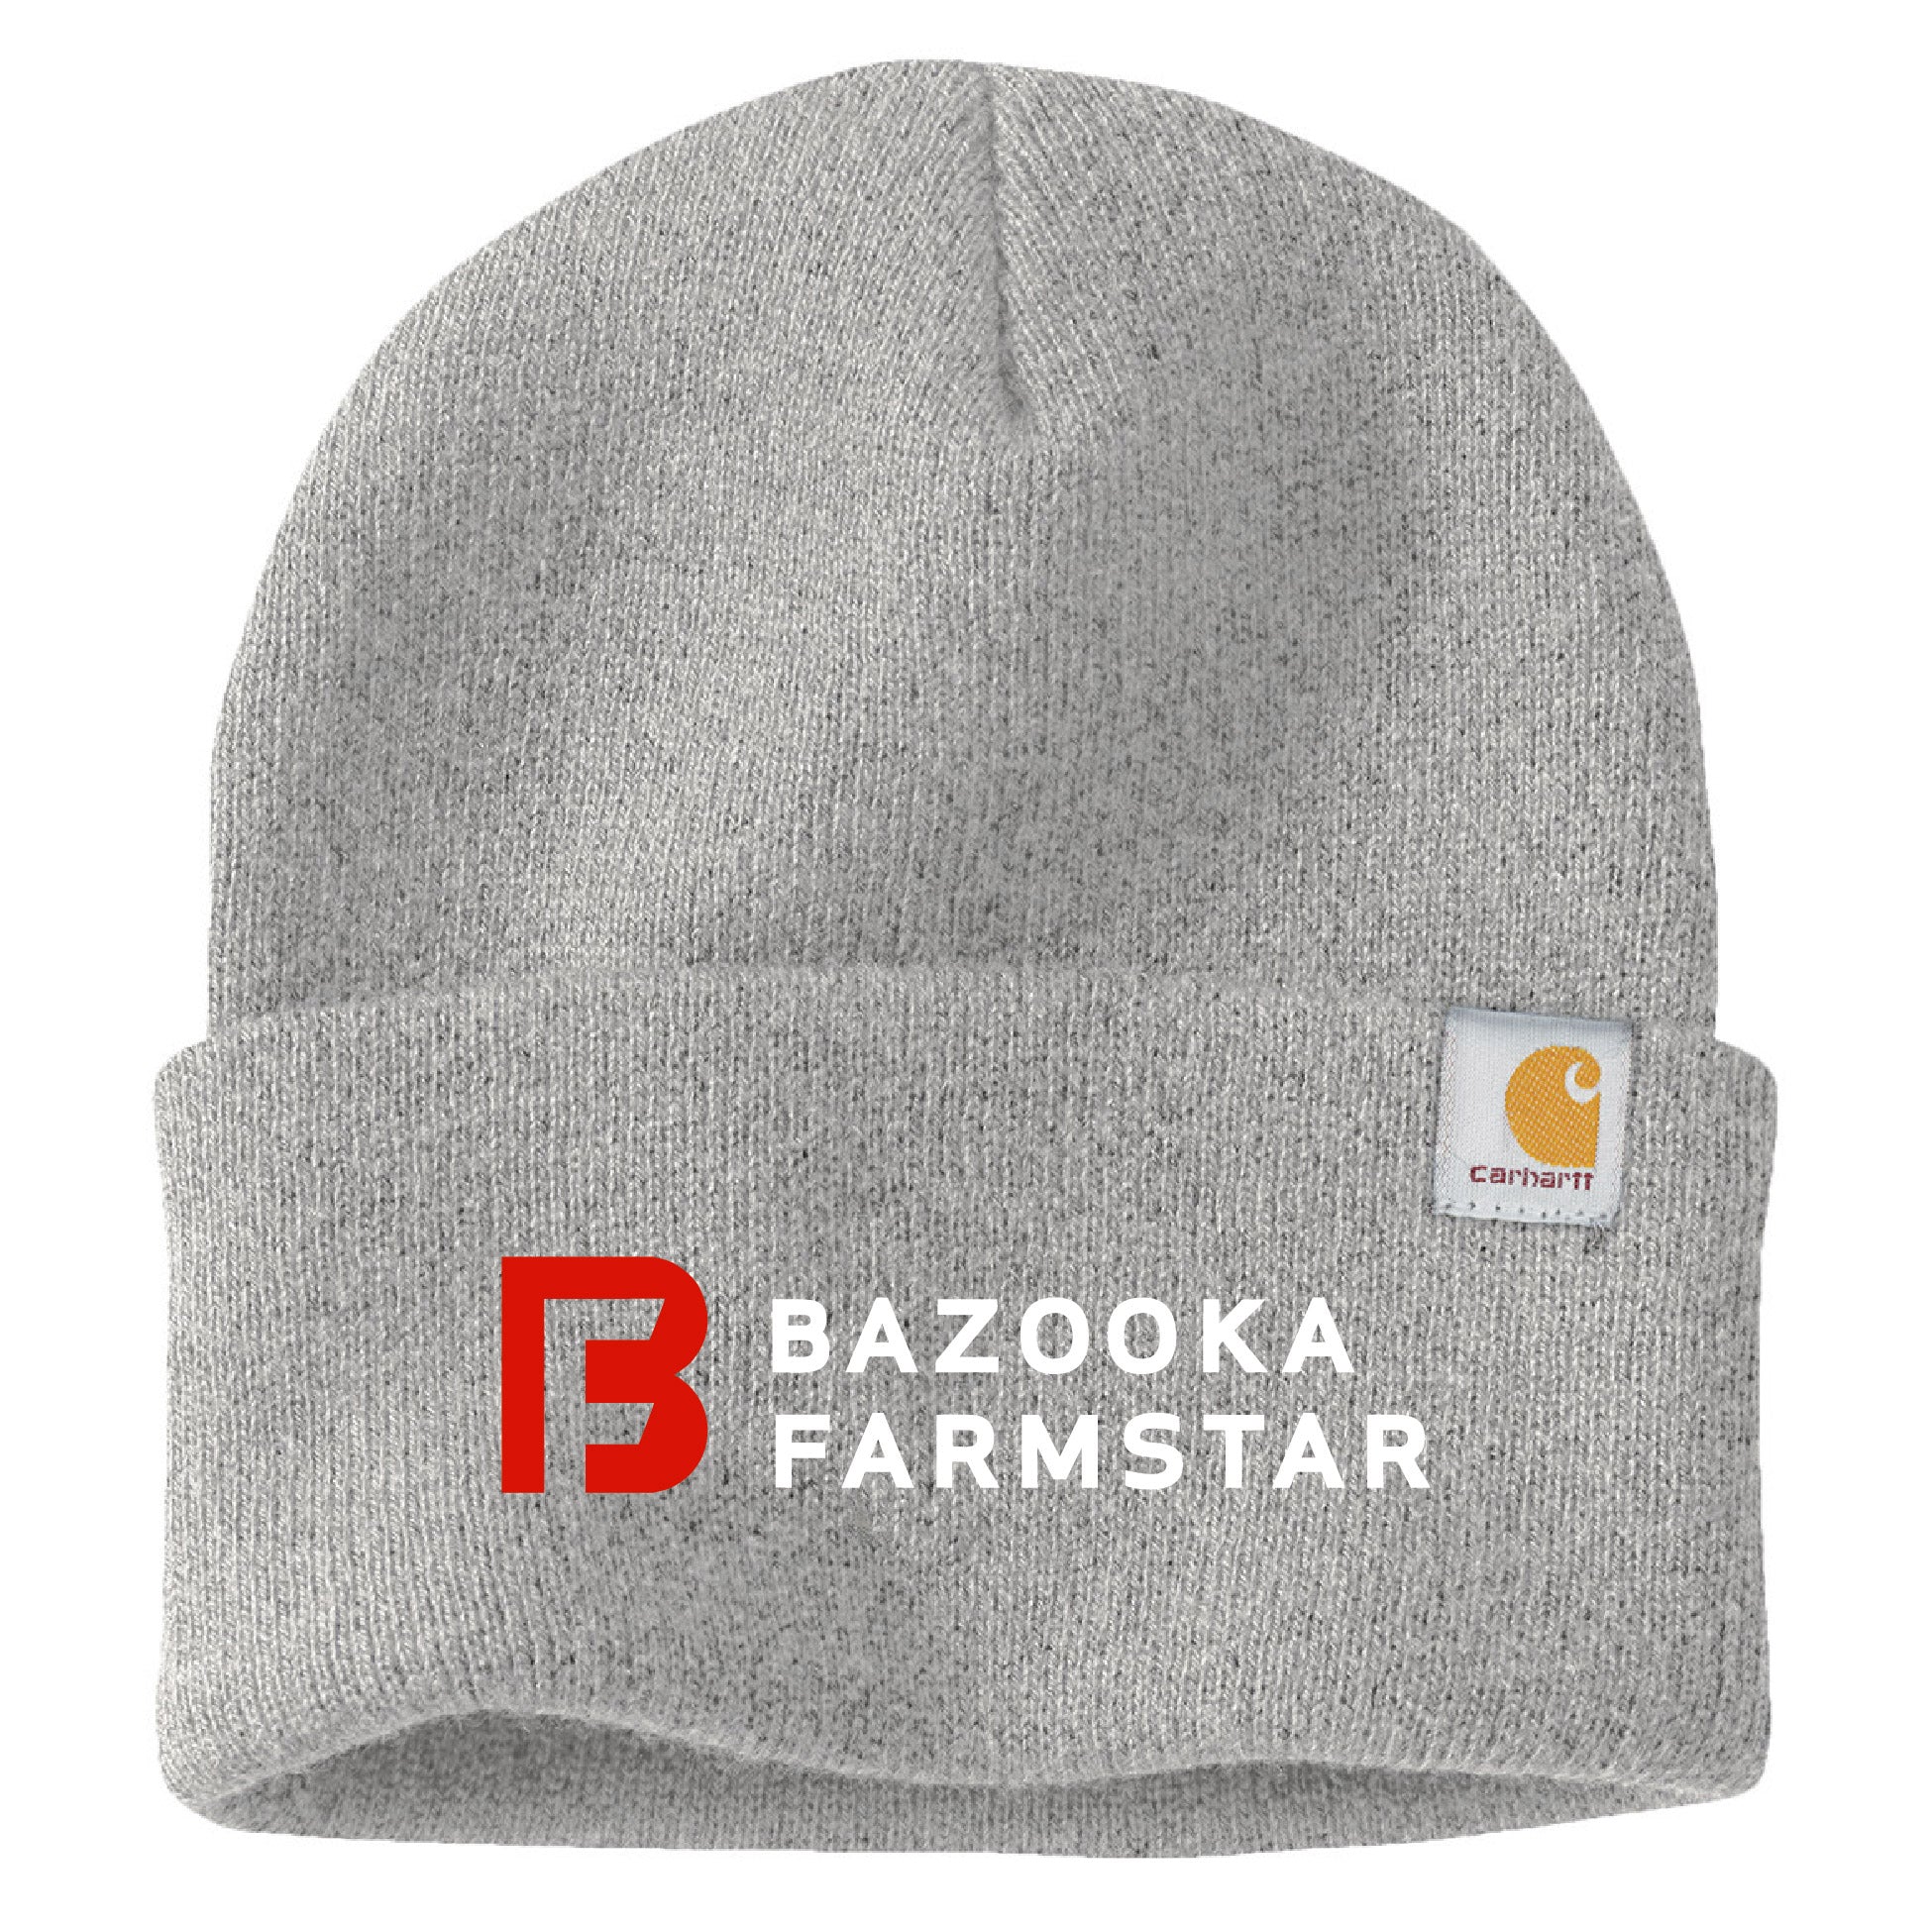 Bazooka Farmstar Carhartt Cap